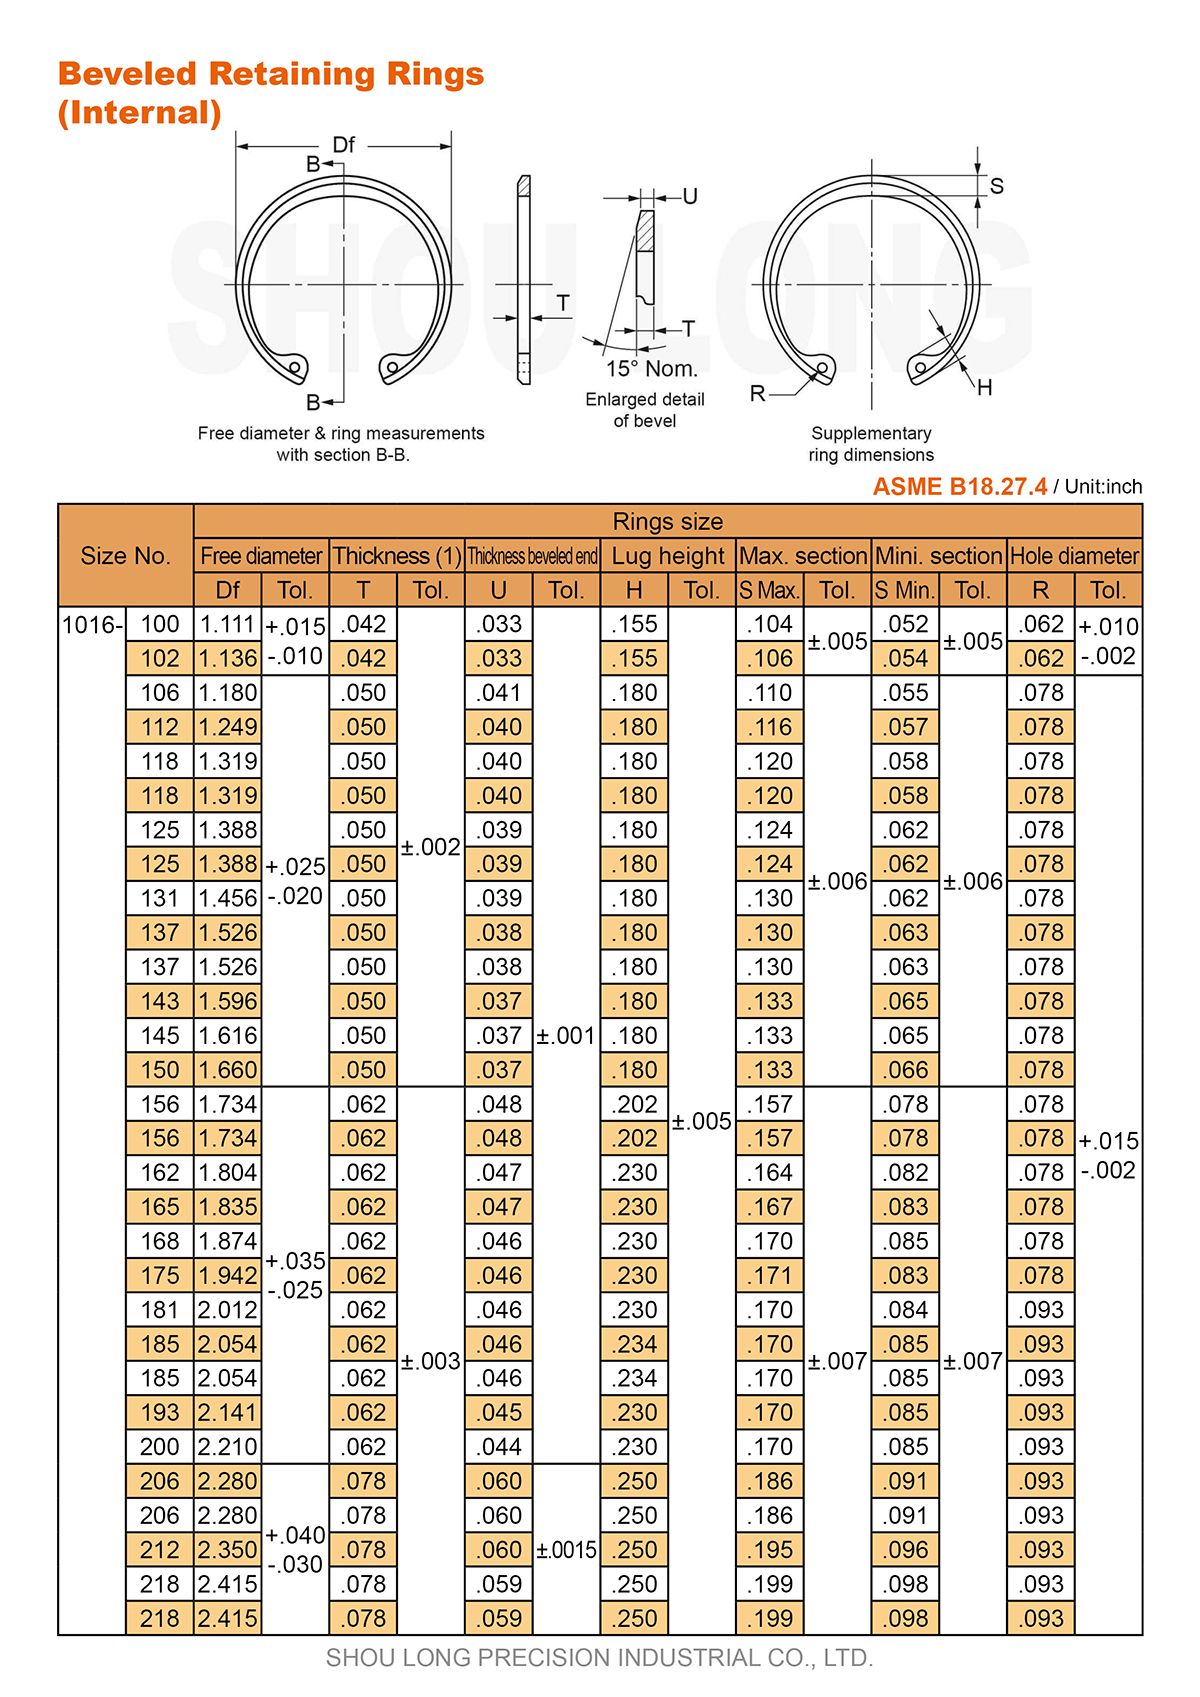 ข้อมูลของวงแหวนรัดวงกลมเบ้าเอียงสำหรับรู ASME/ANSI B18.27.4-1